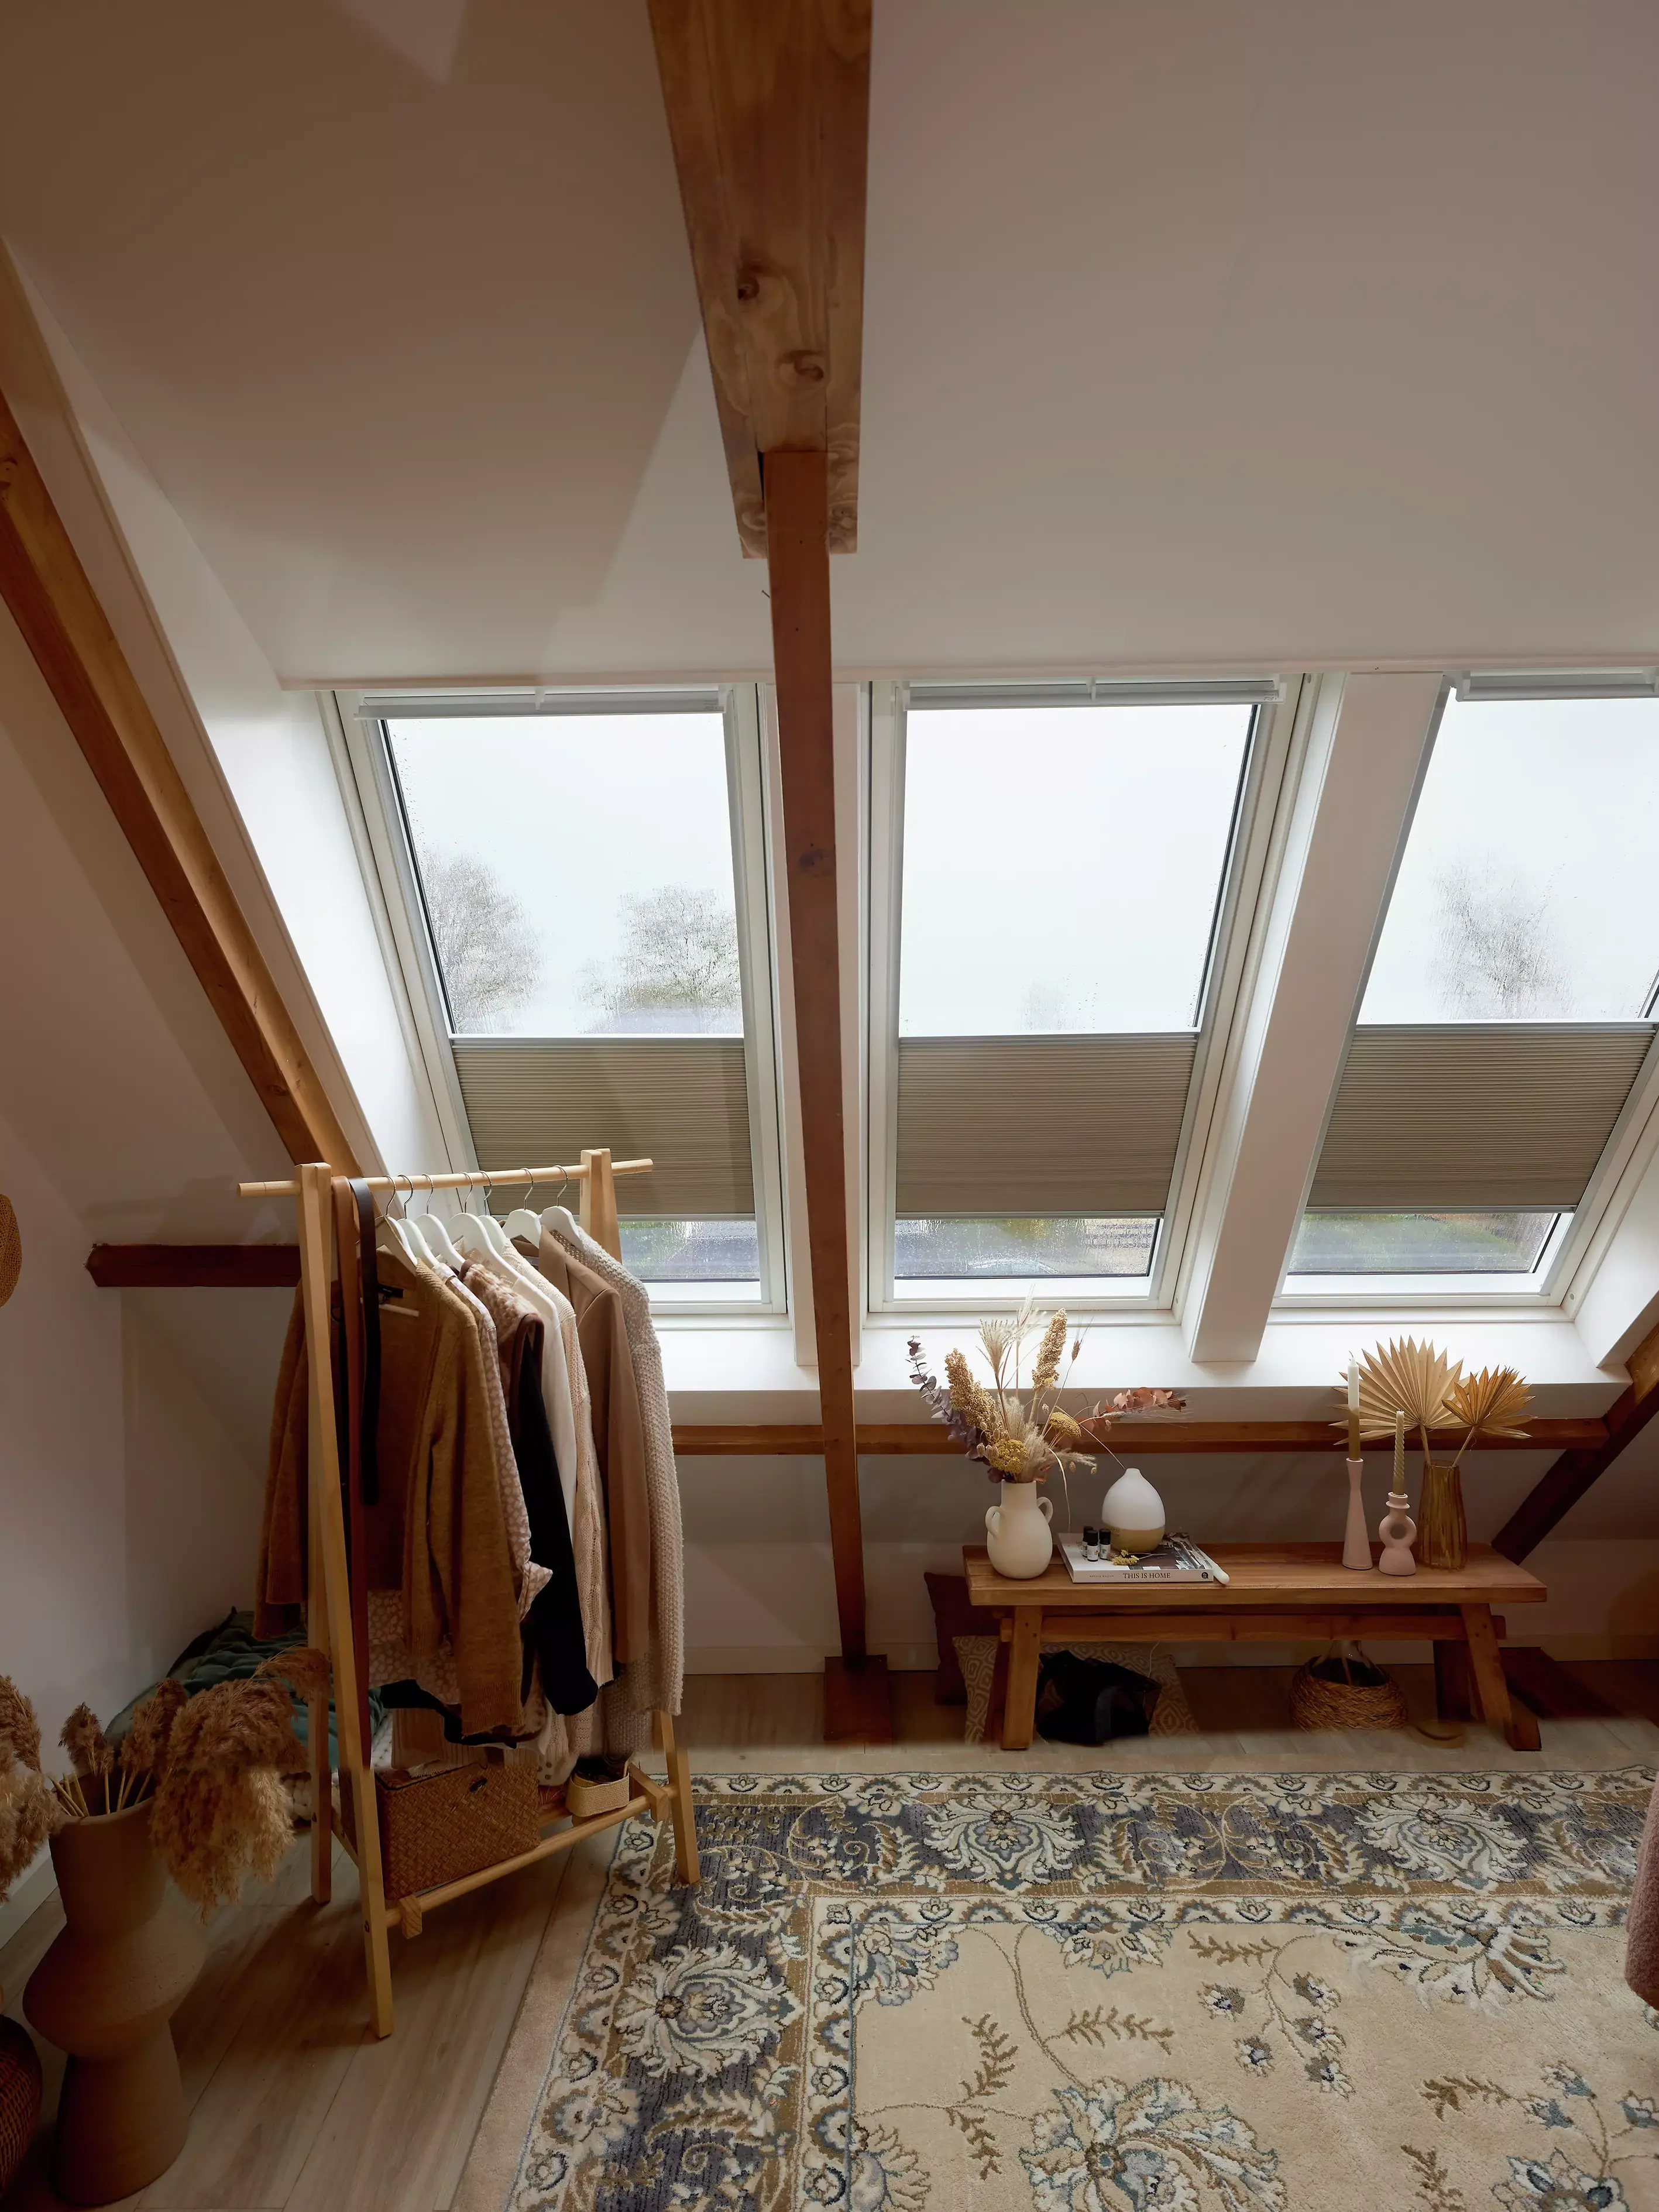 Espace de dressing dans le comble avec lumière naturelle provenant des fenêtres de toit VELUX, poutres en bois, et un tapis à motifs.